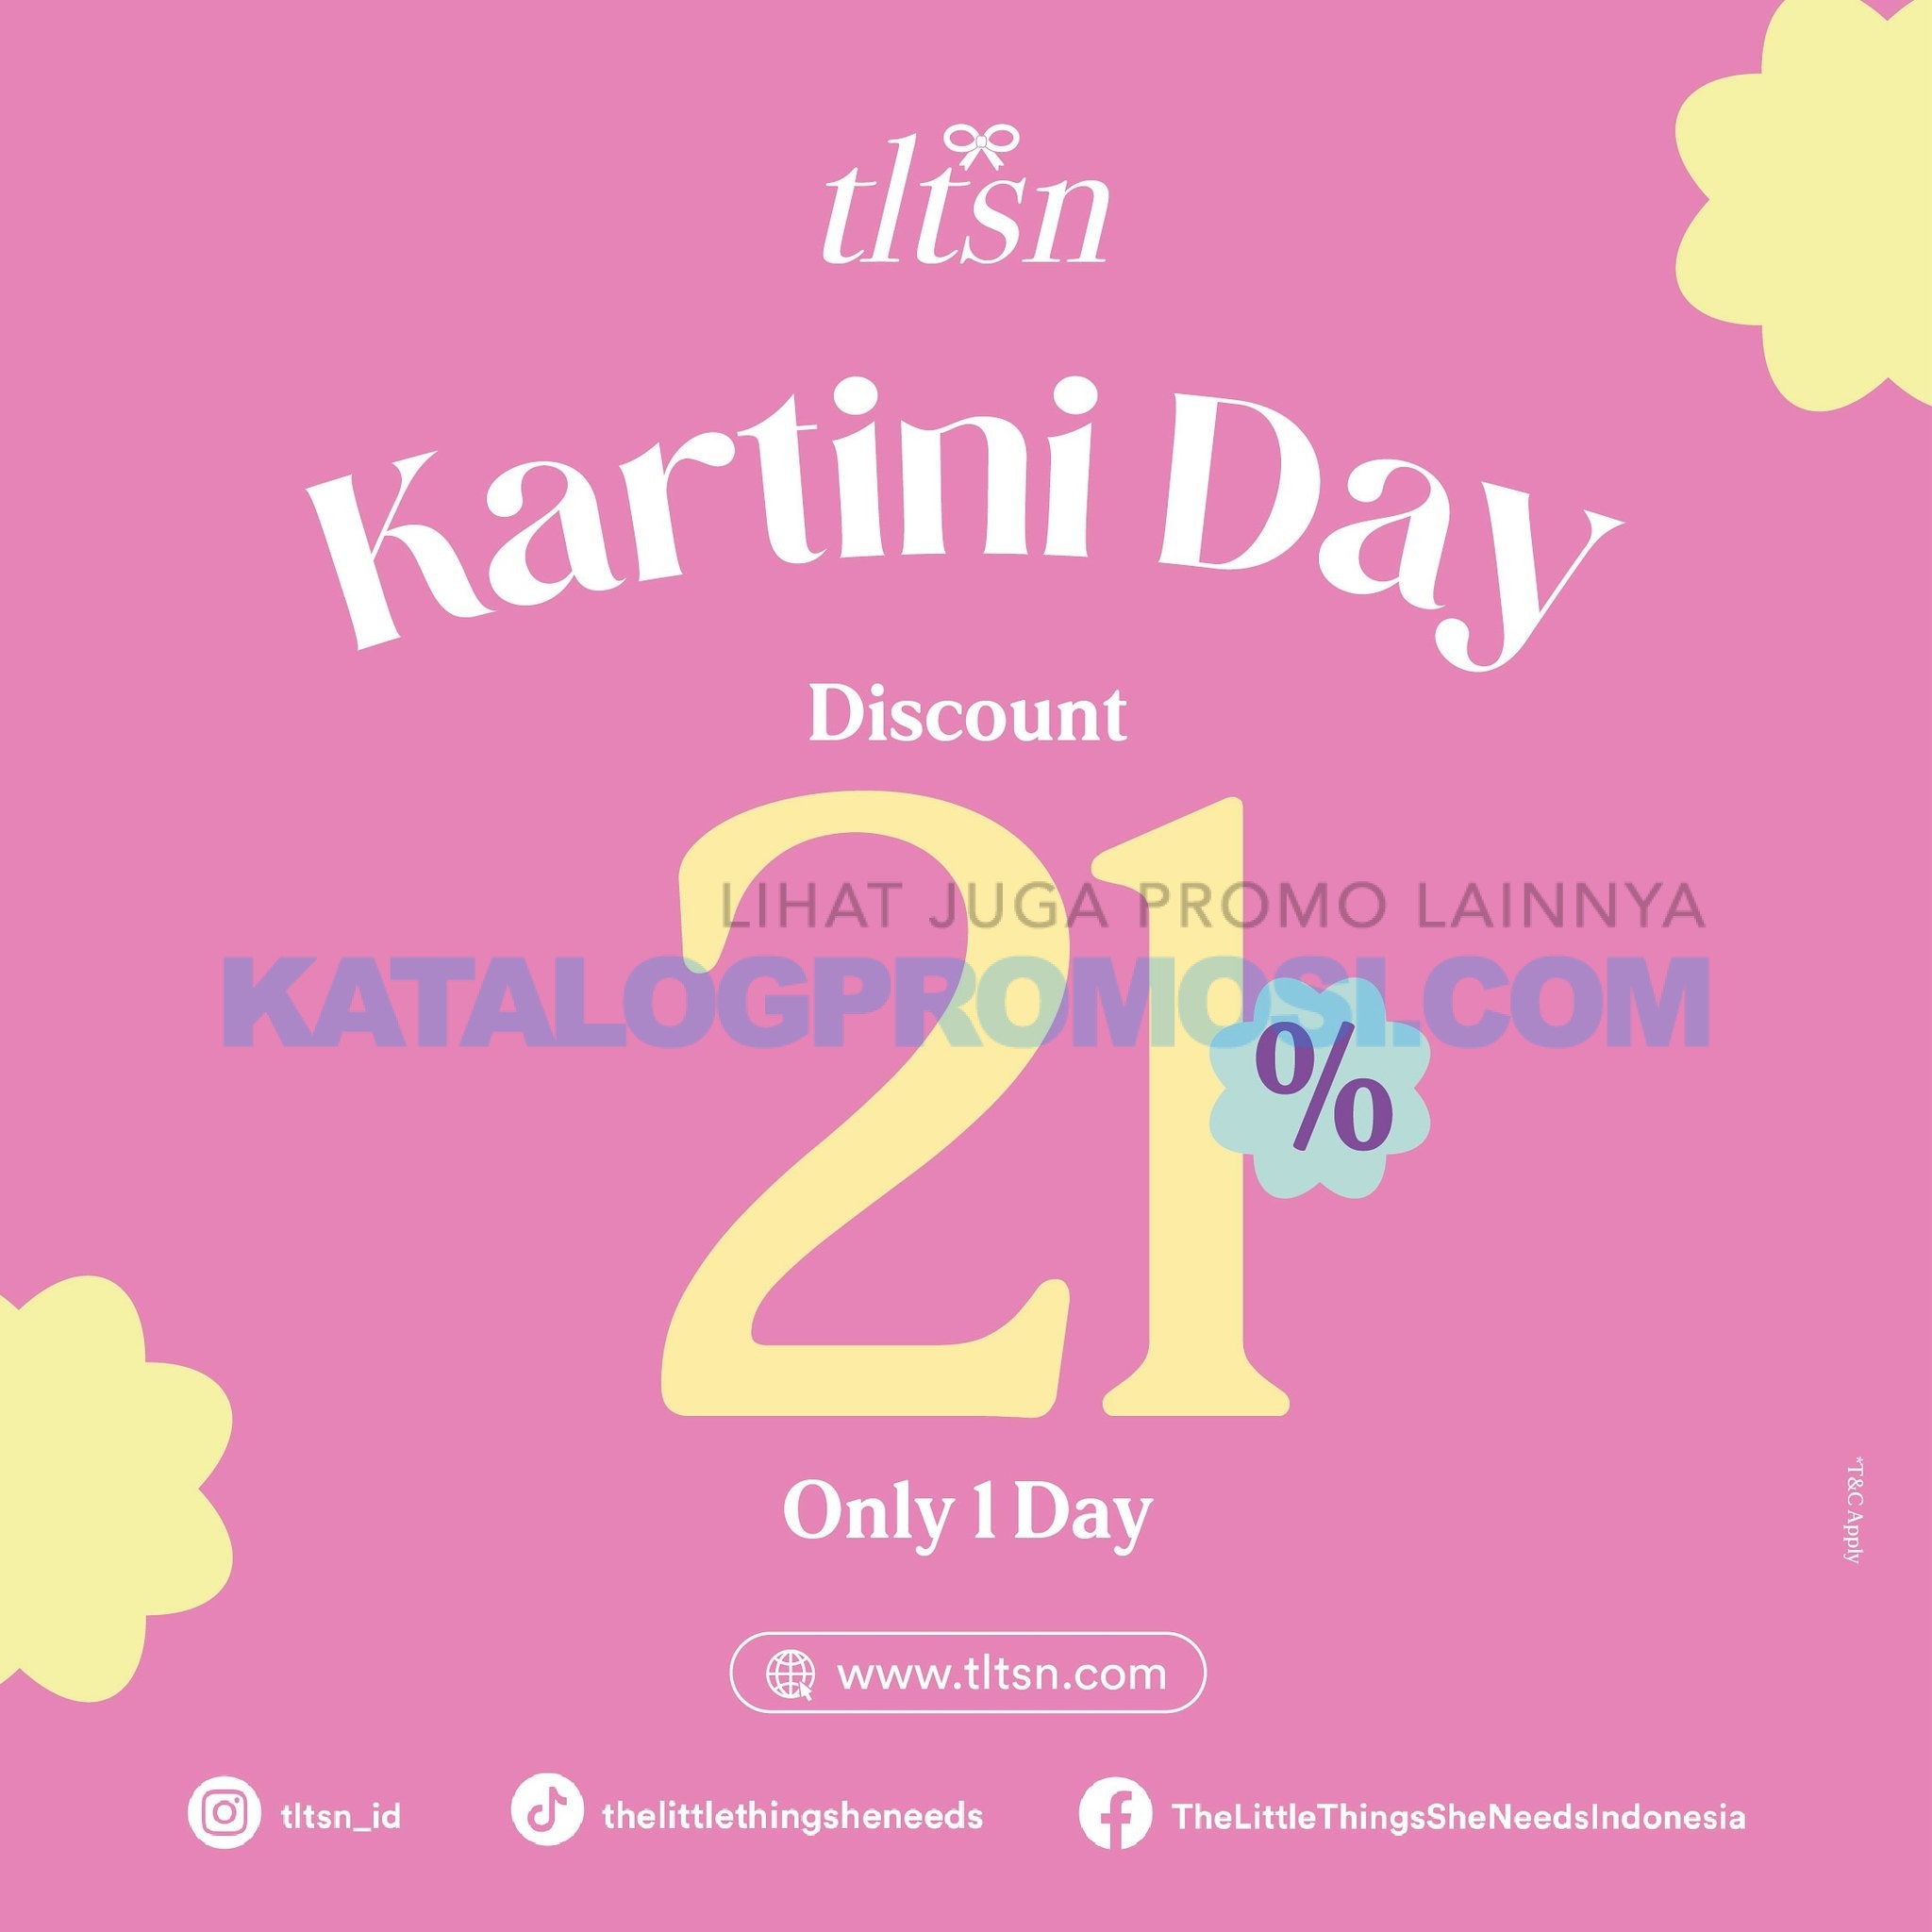 Promo The Little Things She Needs Spesial Hari Kartini day discount 21% berlaku hanya 1 hari, tanggal 21 April 2024